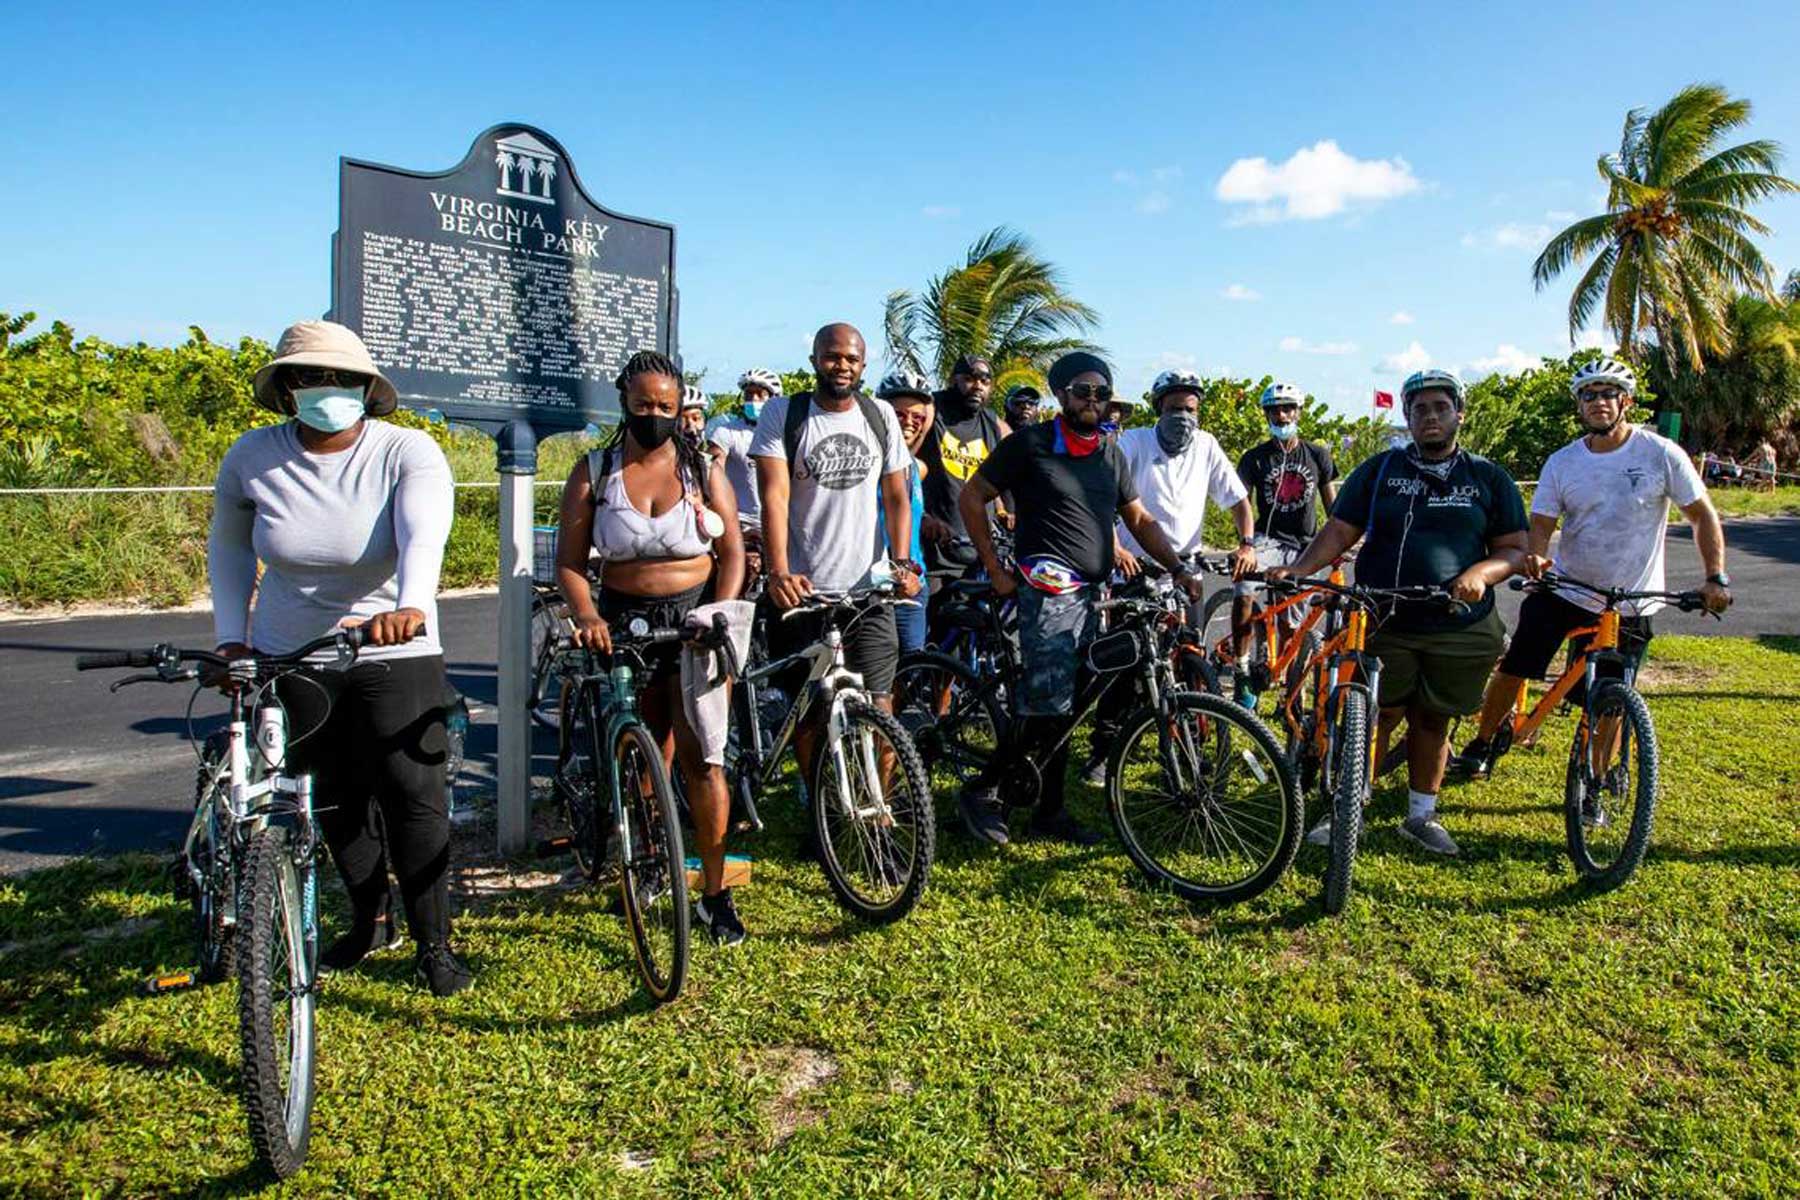 La histórica playa negra en Miami aún recibe visitantes tras 75 años de su fundación (+Video)